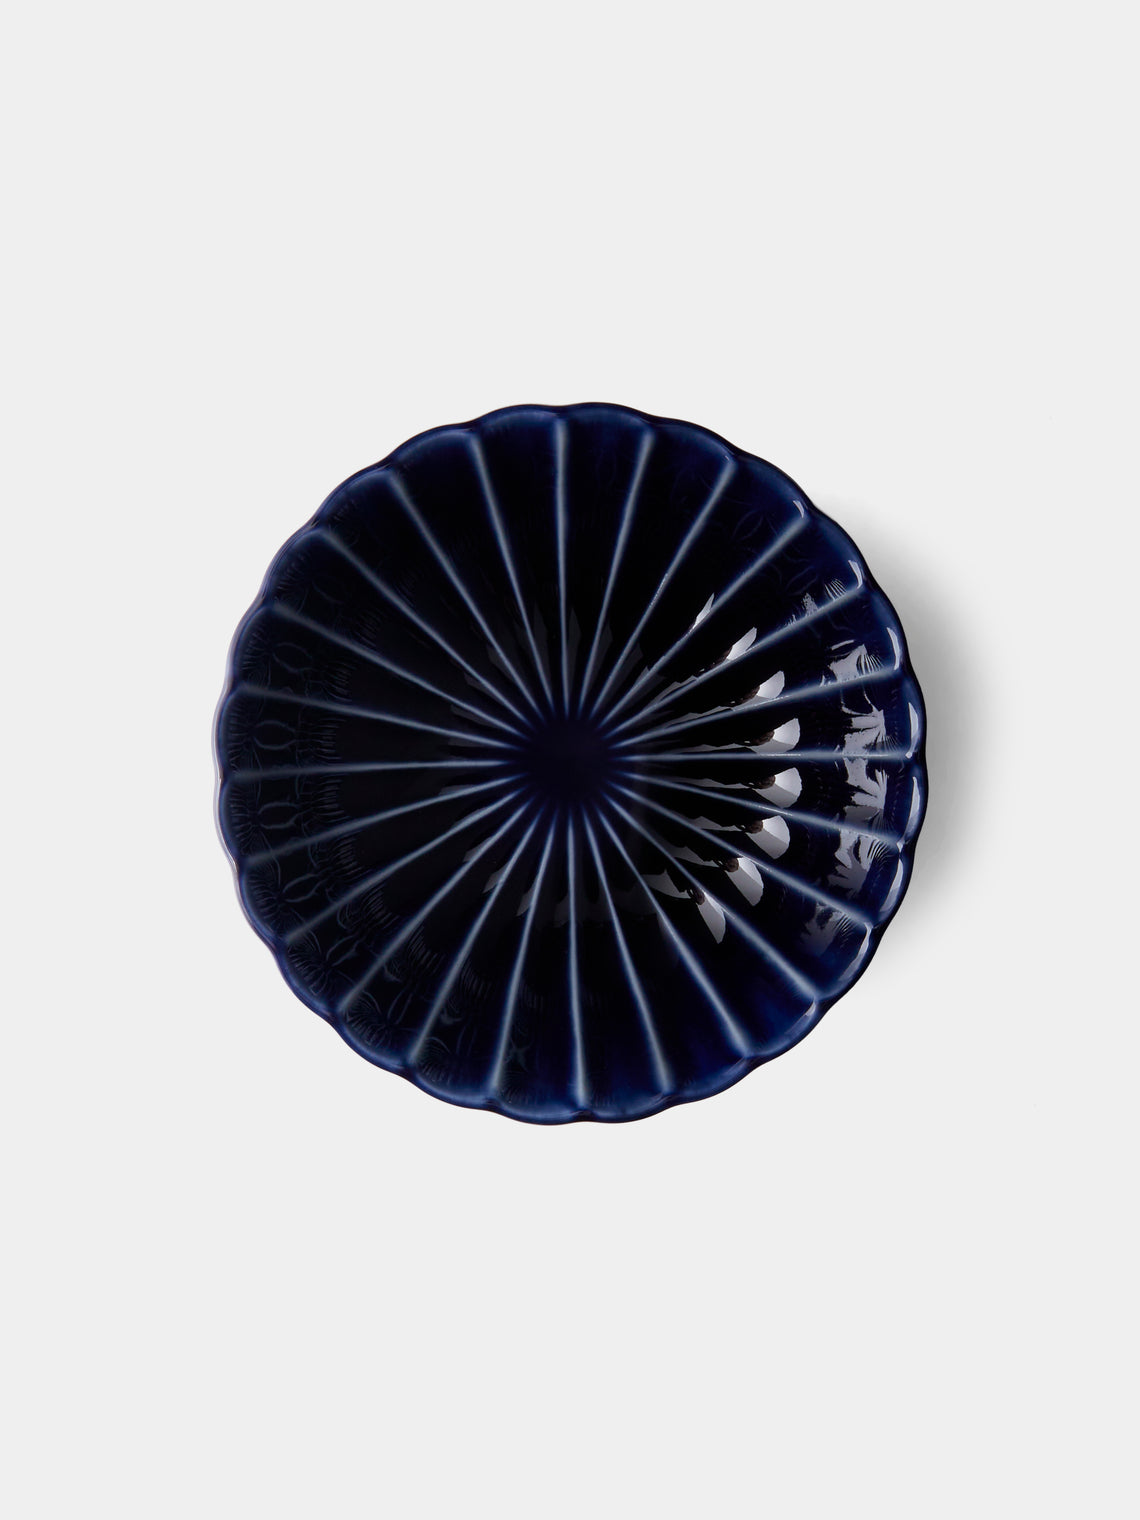 Kaneko Kohyo - Giyaman Urushi Ceramic Shallow Bowls (Set of 4) - Blue - ABASK